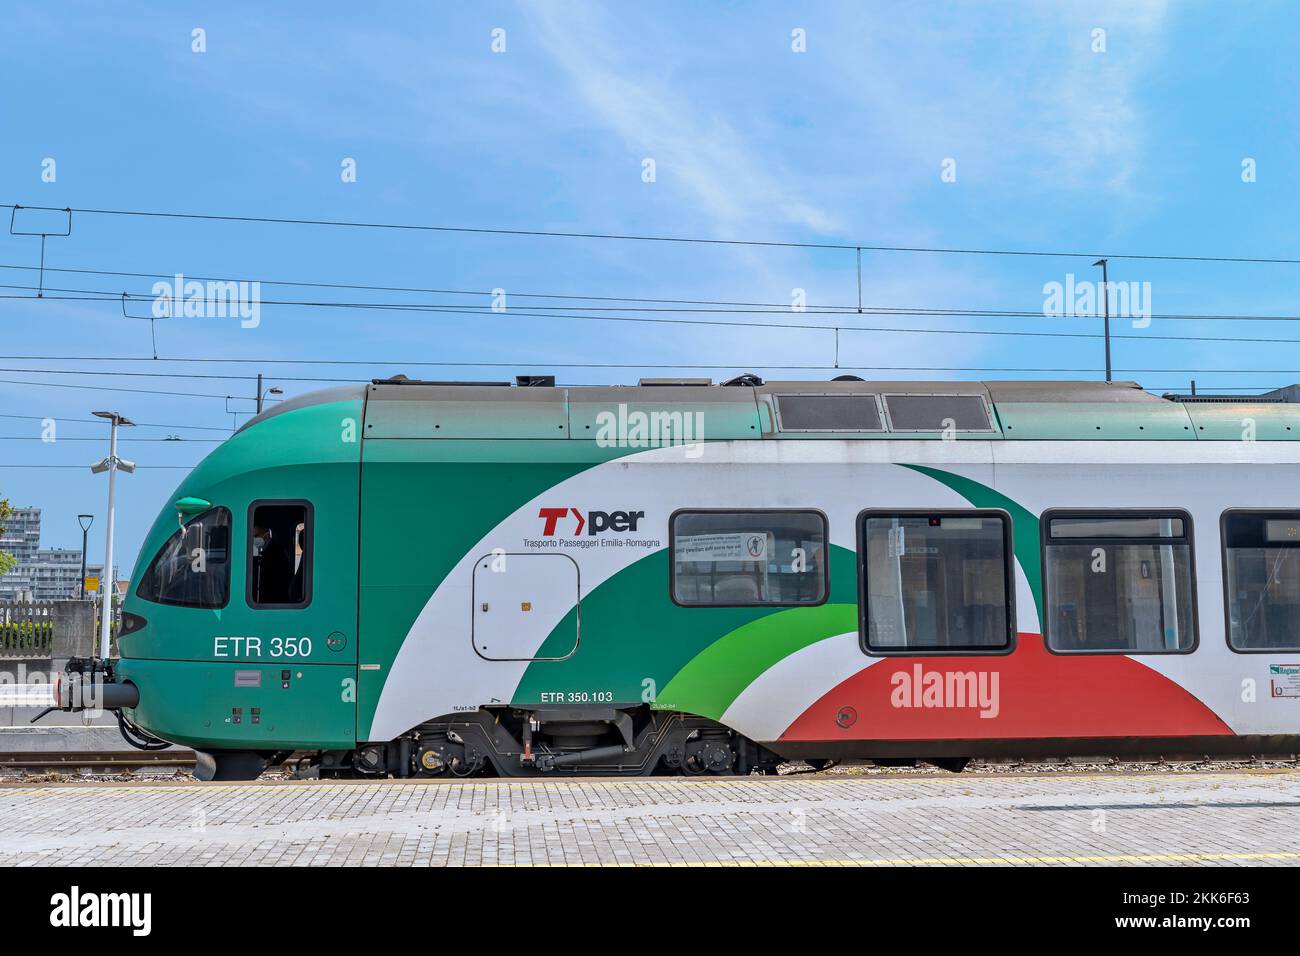 ETR 350 103, neue Züge der Trenitalia Tper Company, die den regionalen Eisenbahnverkehr der Emilia-Romagna leiten. Bahnhof Ravenna, Italien, Europa, EU Stockfoto